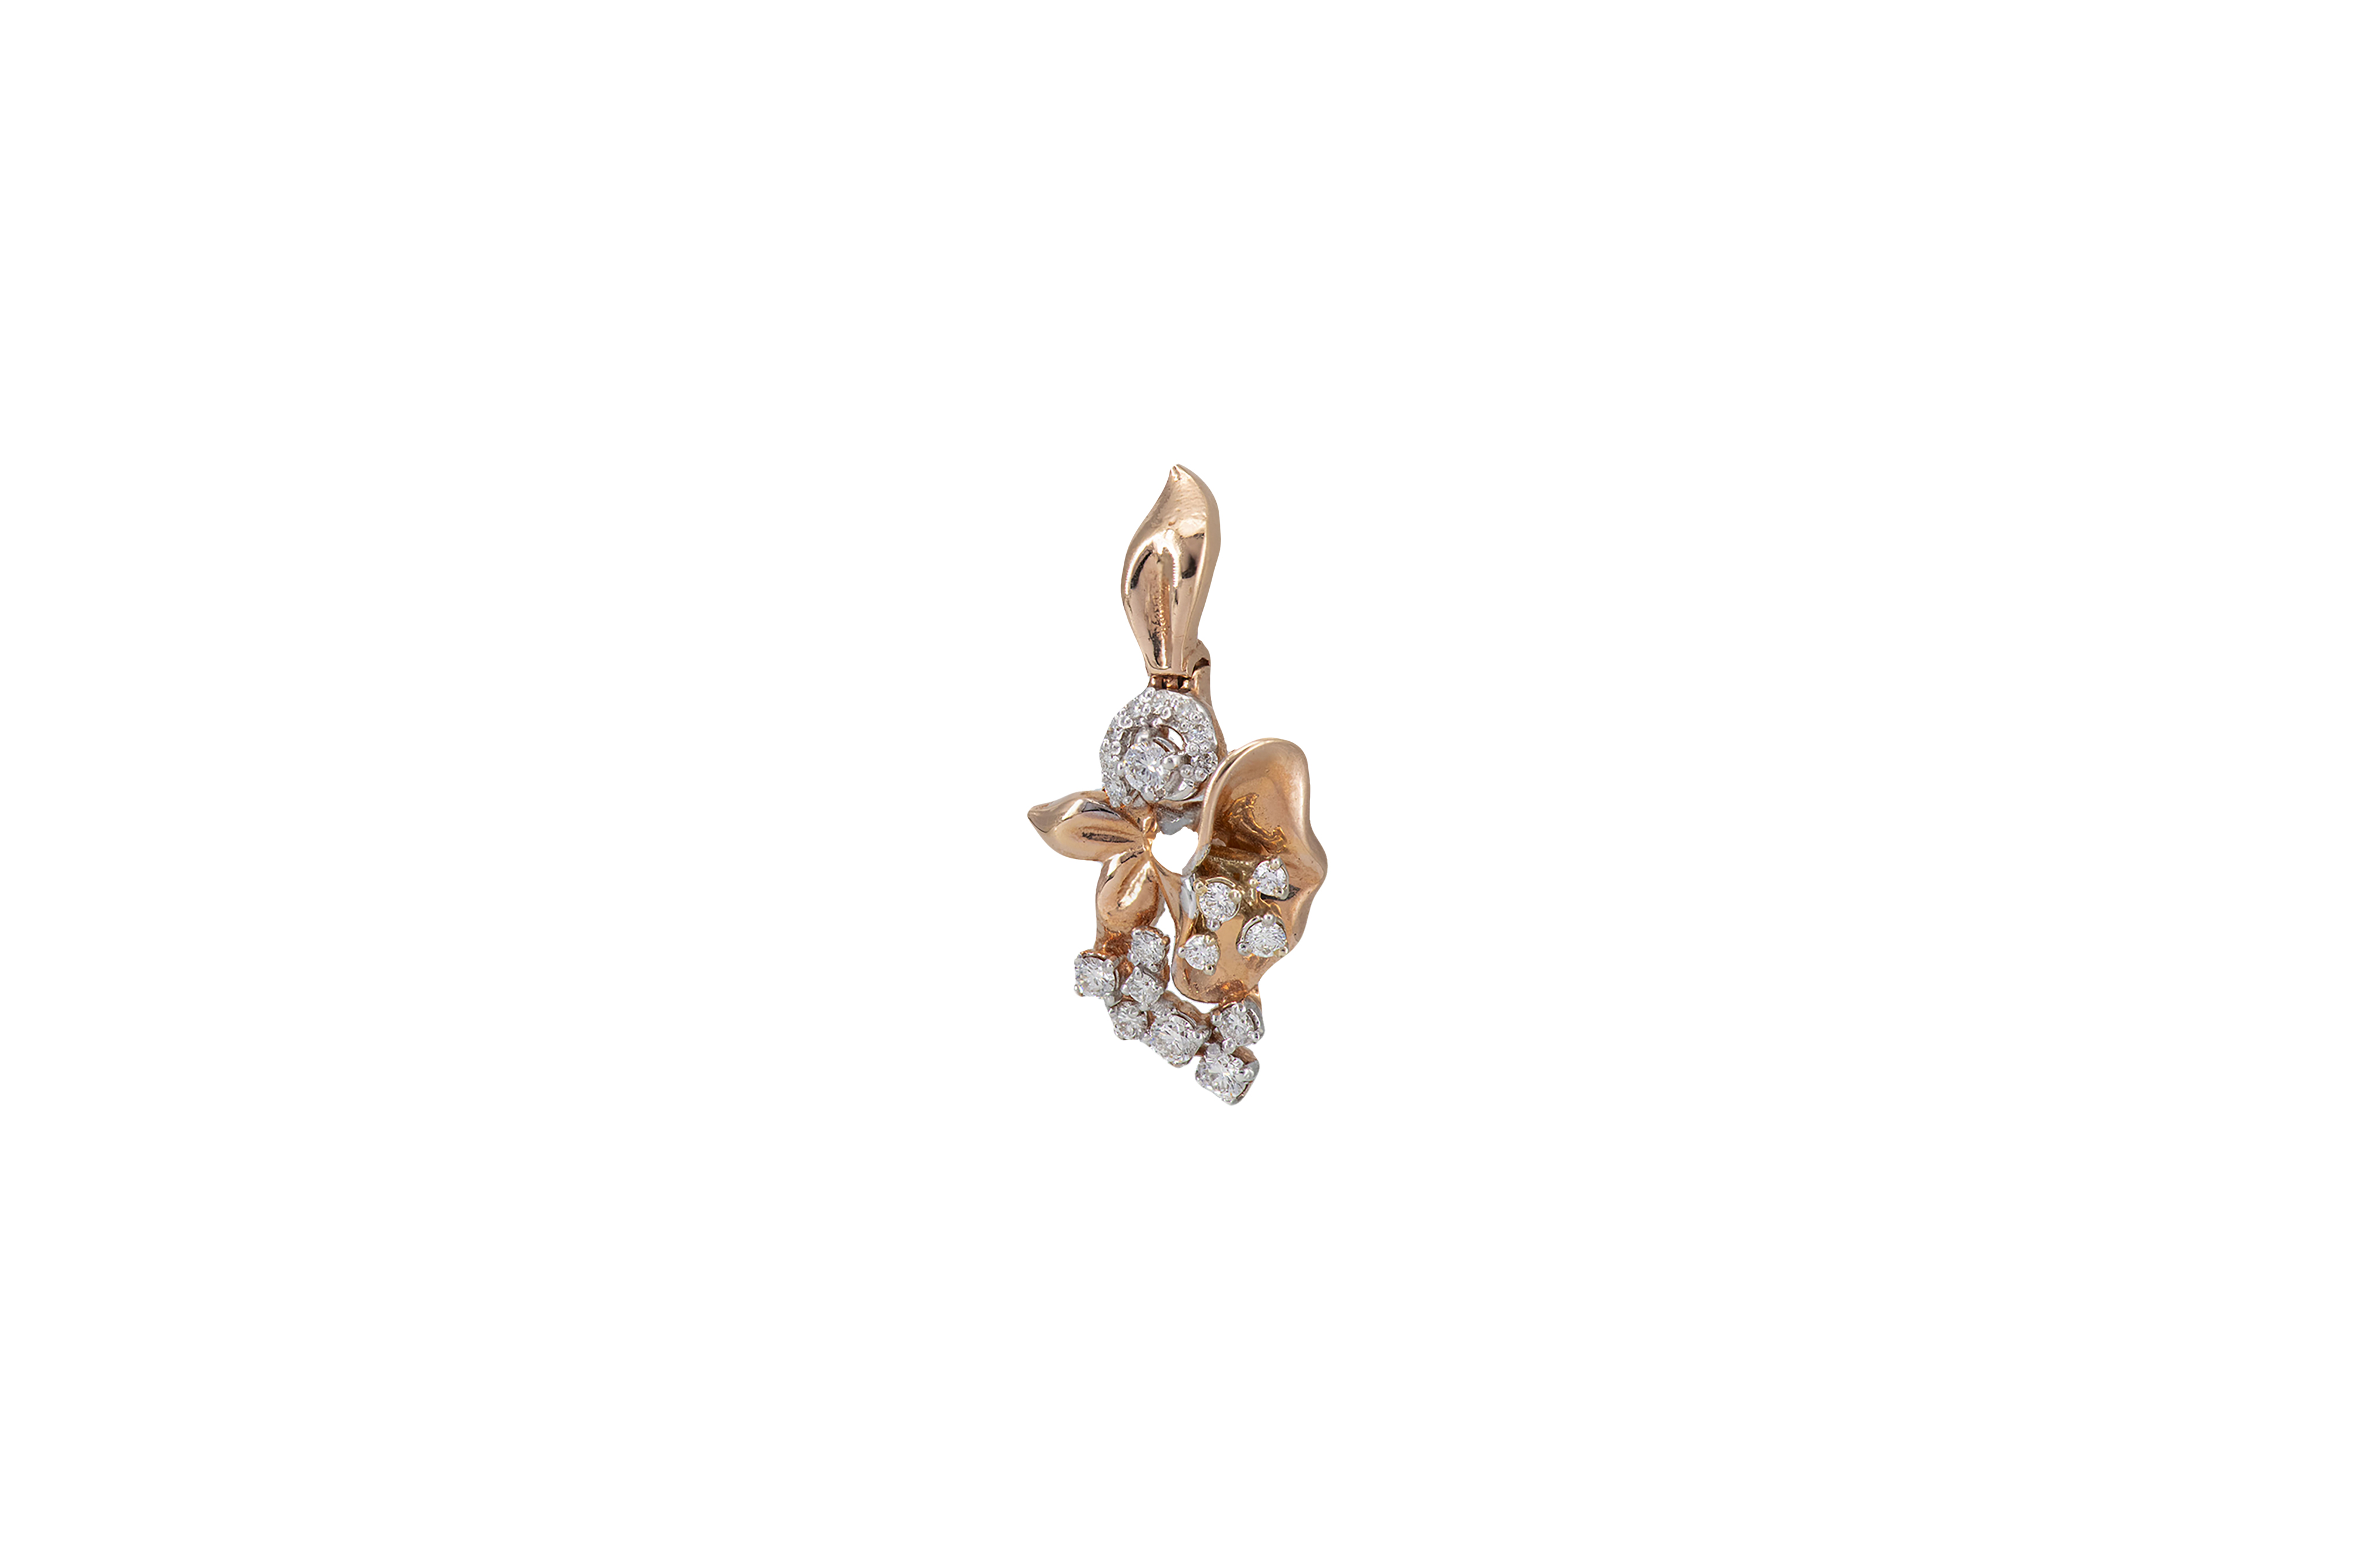 Blooming Diamond Earrings